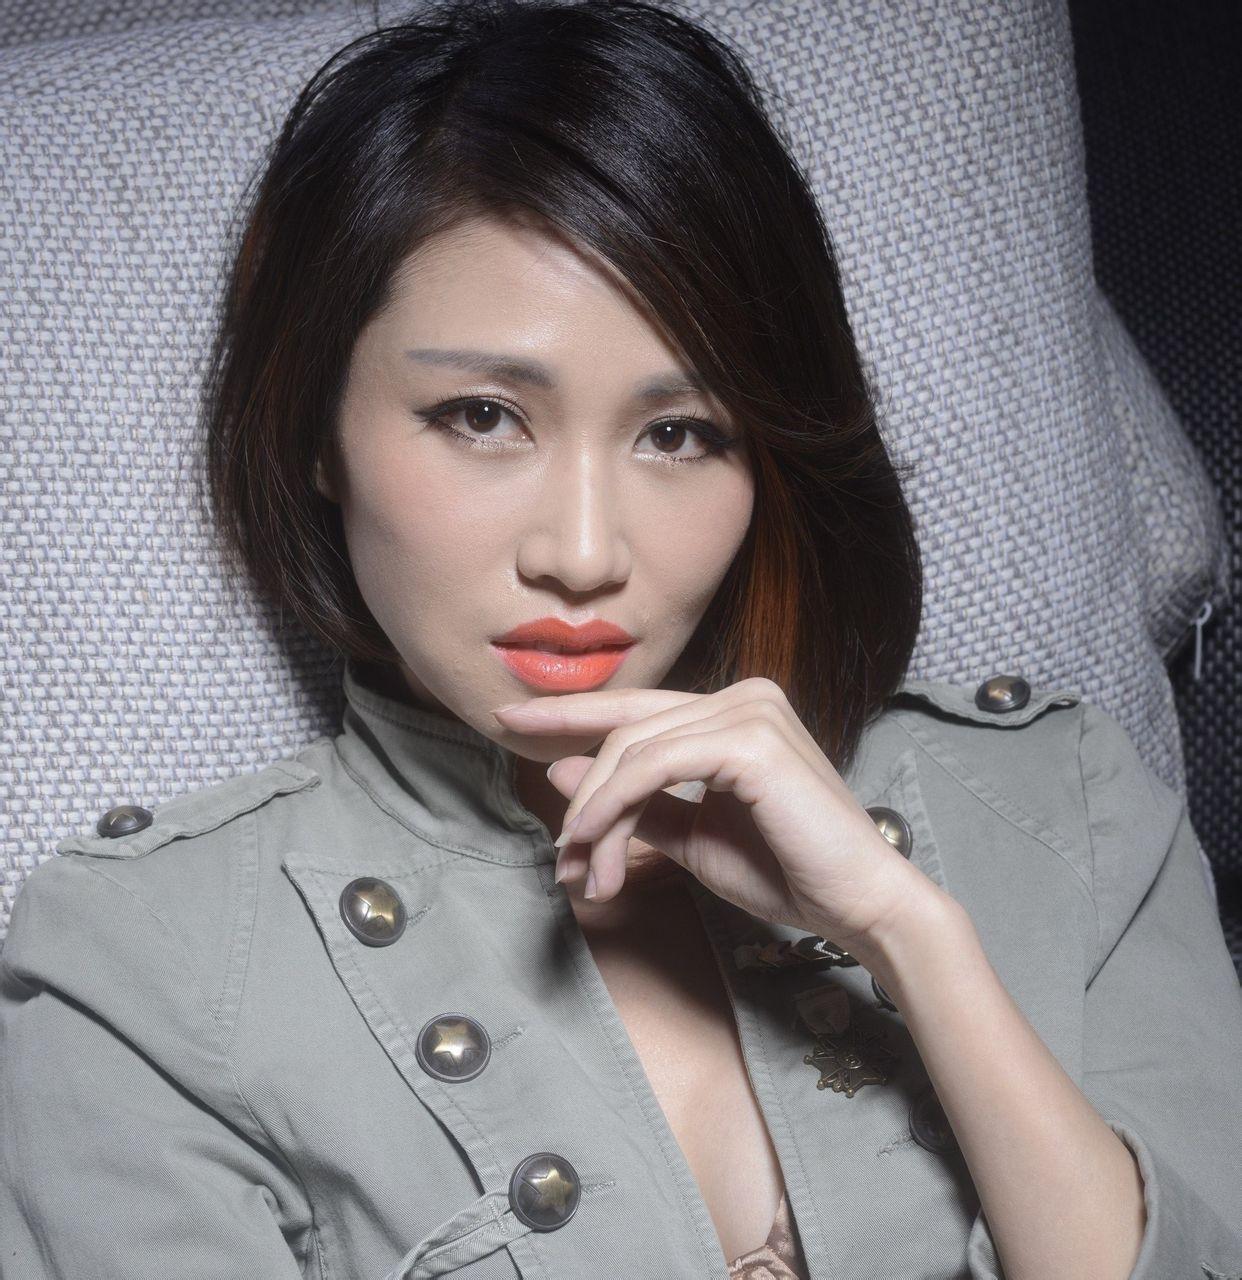 《恋爱中的宝贝》是歌手黄琦雯2006年发行的同名专辑《黄琦雯》中的一